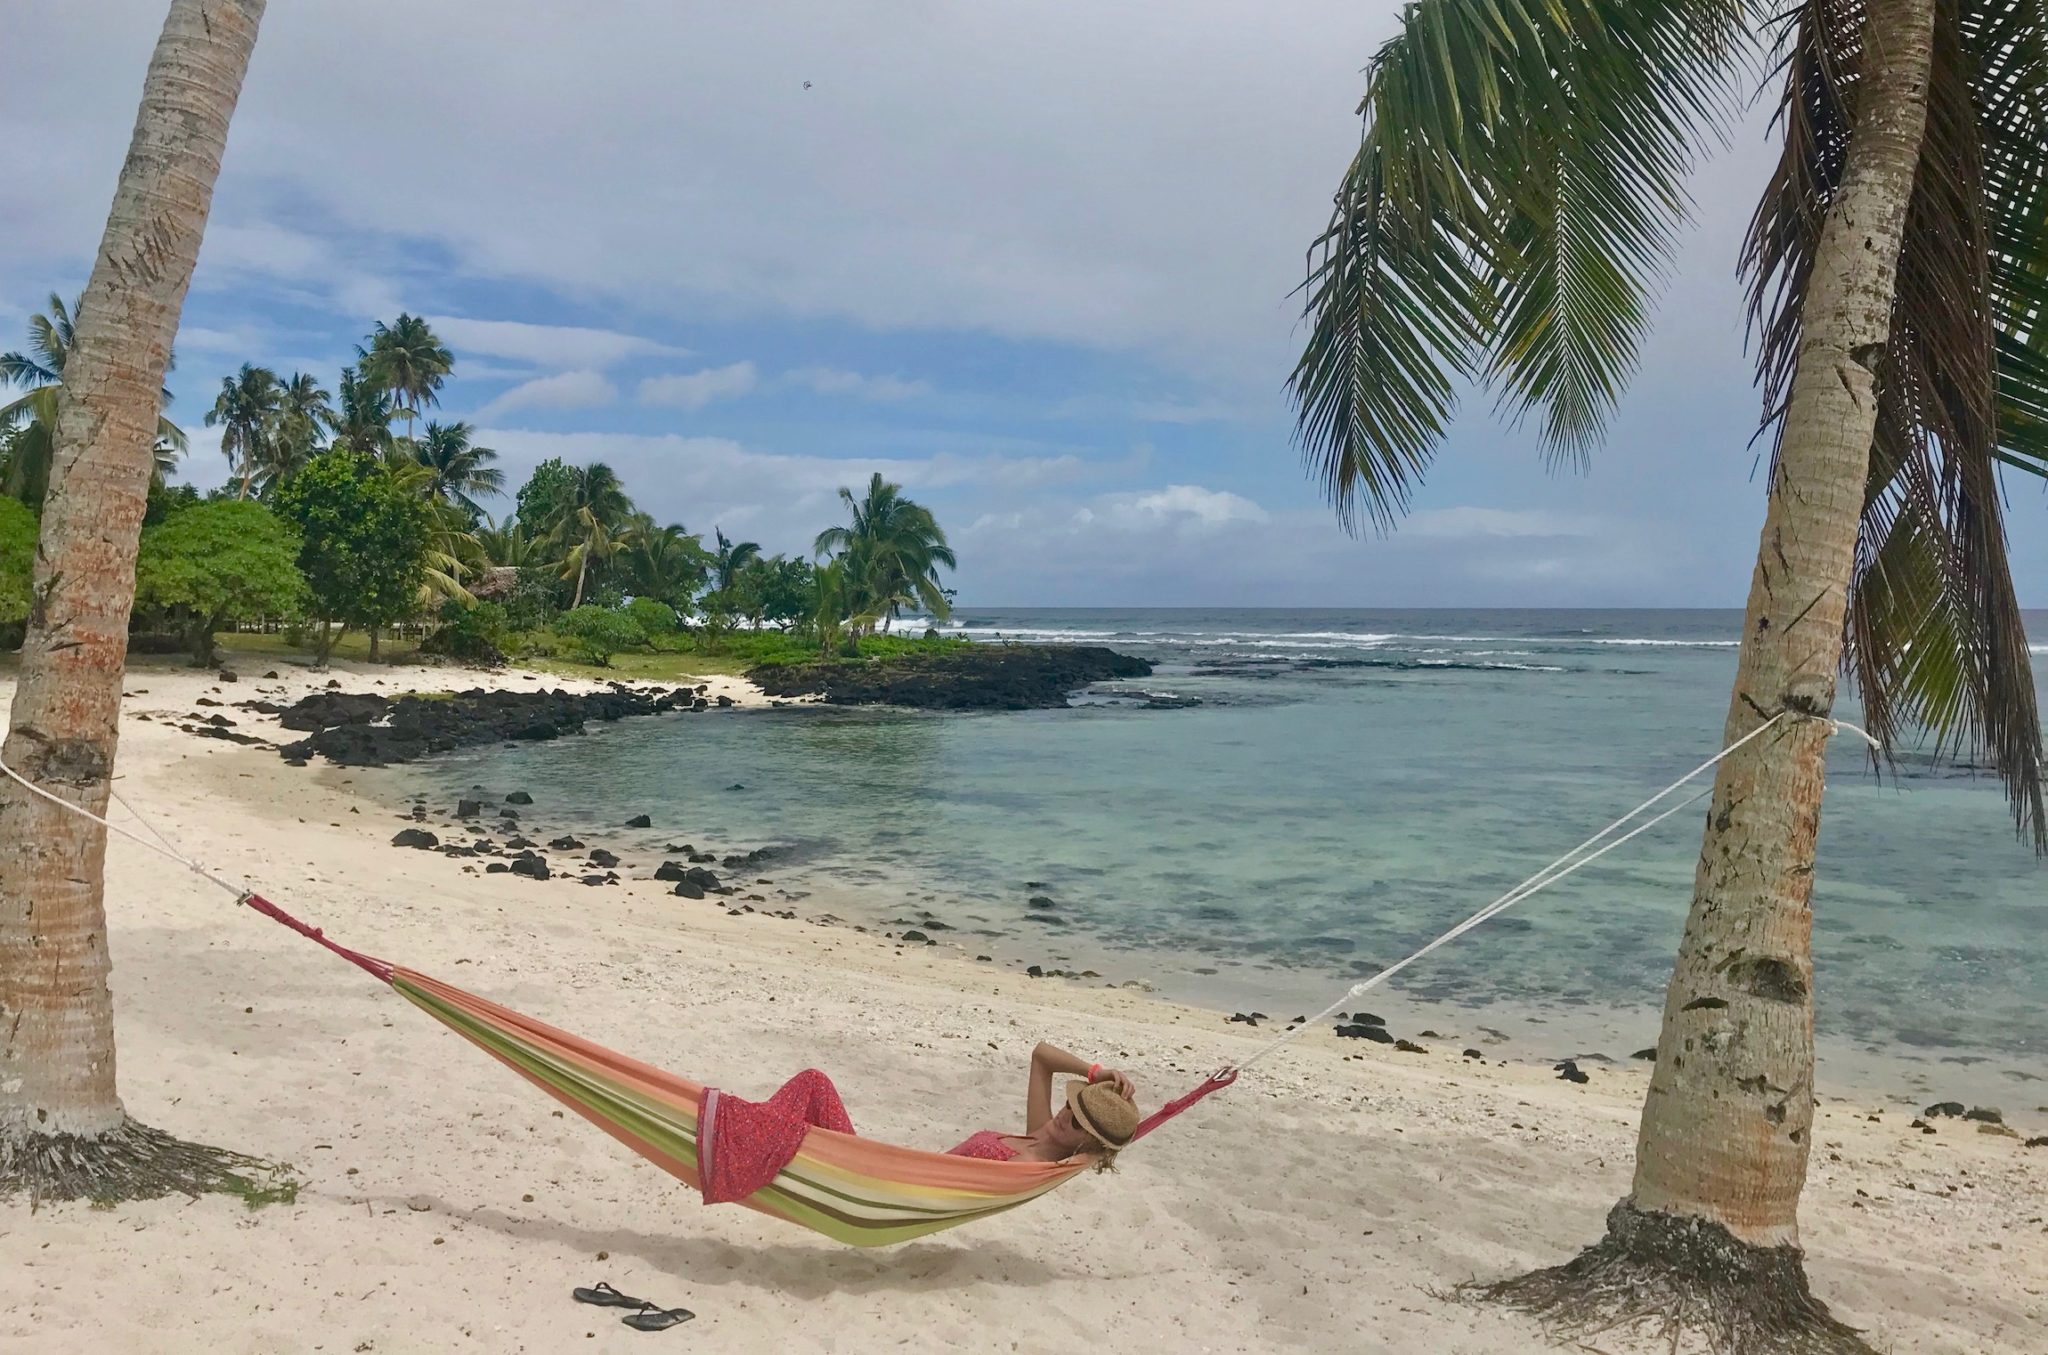 Hayley relaxing in a hammock on a beach in Upolu, Samoa